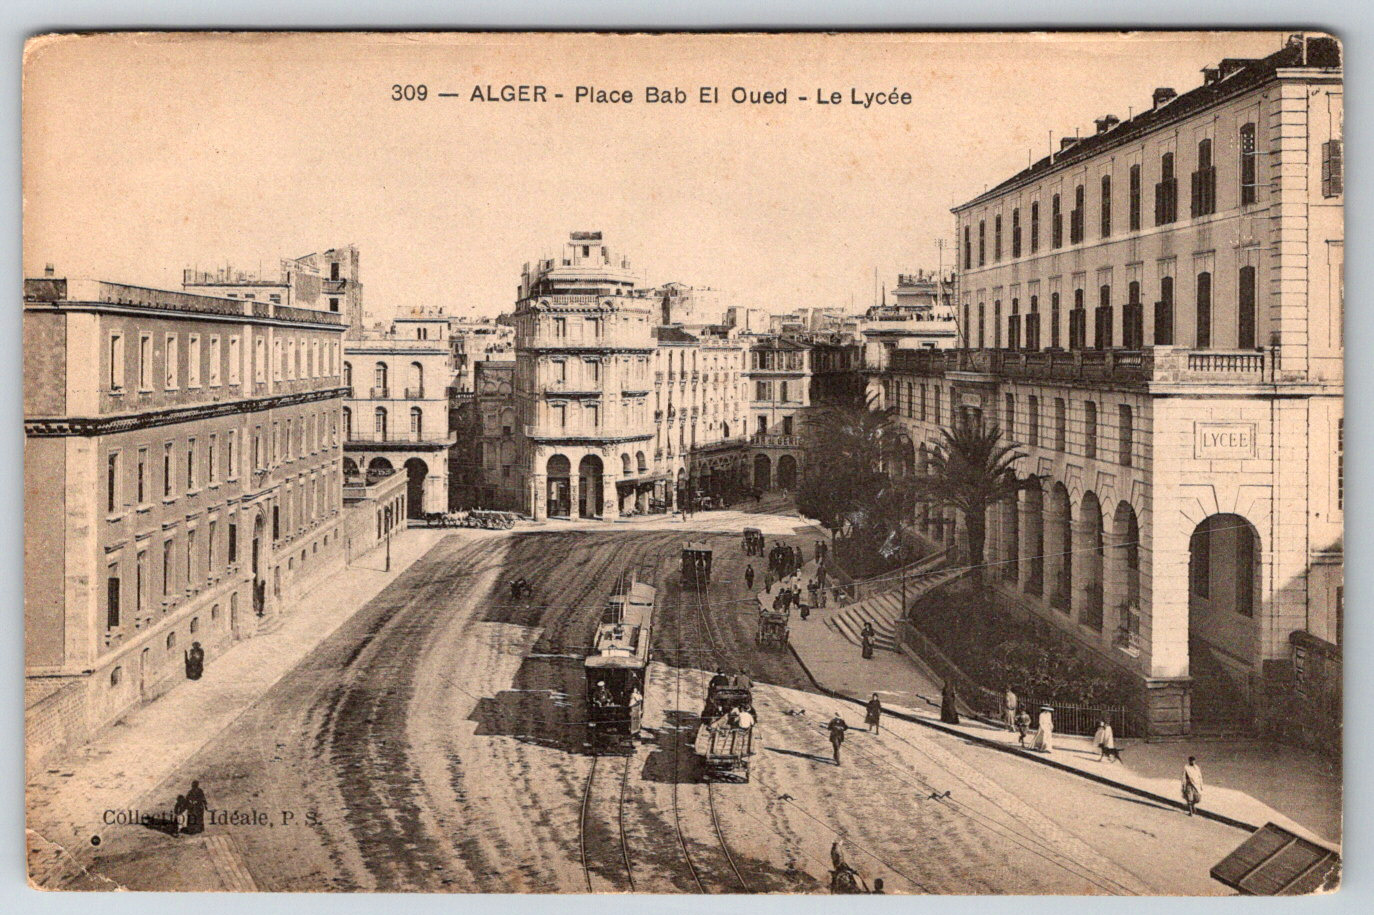 c1910s Algeria Place Bab El Oued Le Lycee Street View Antique Postcard